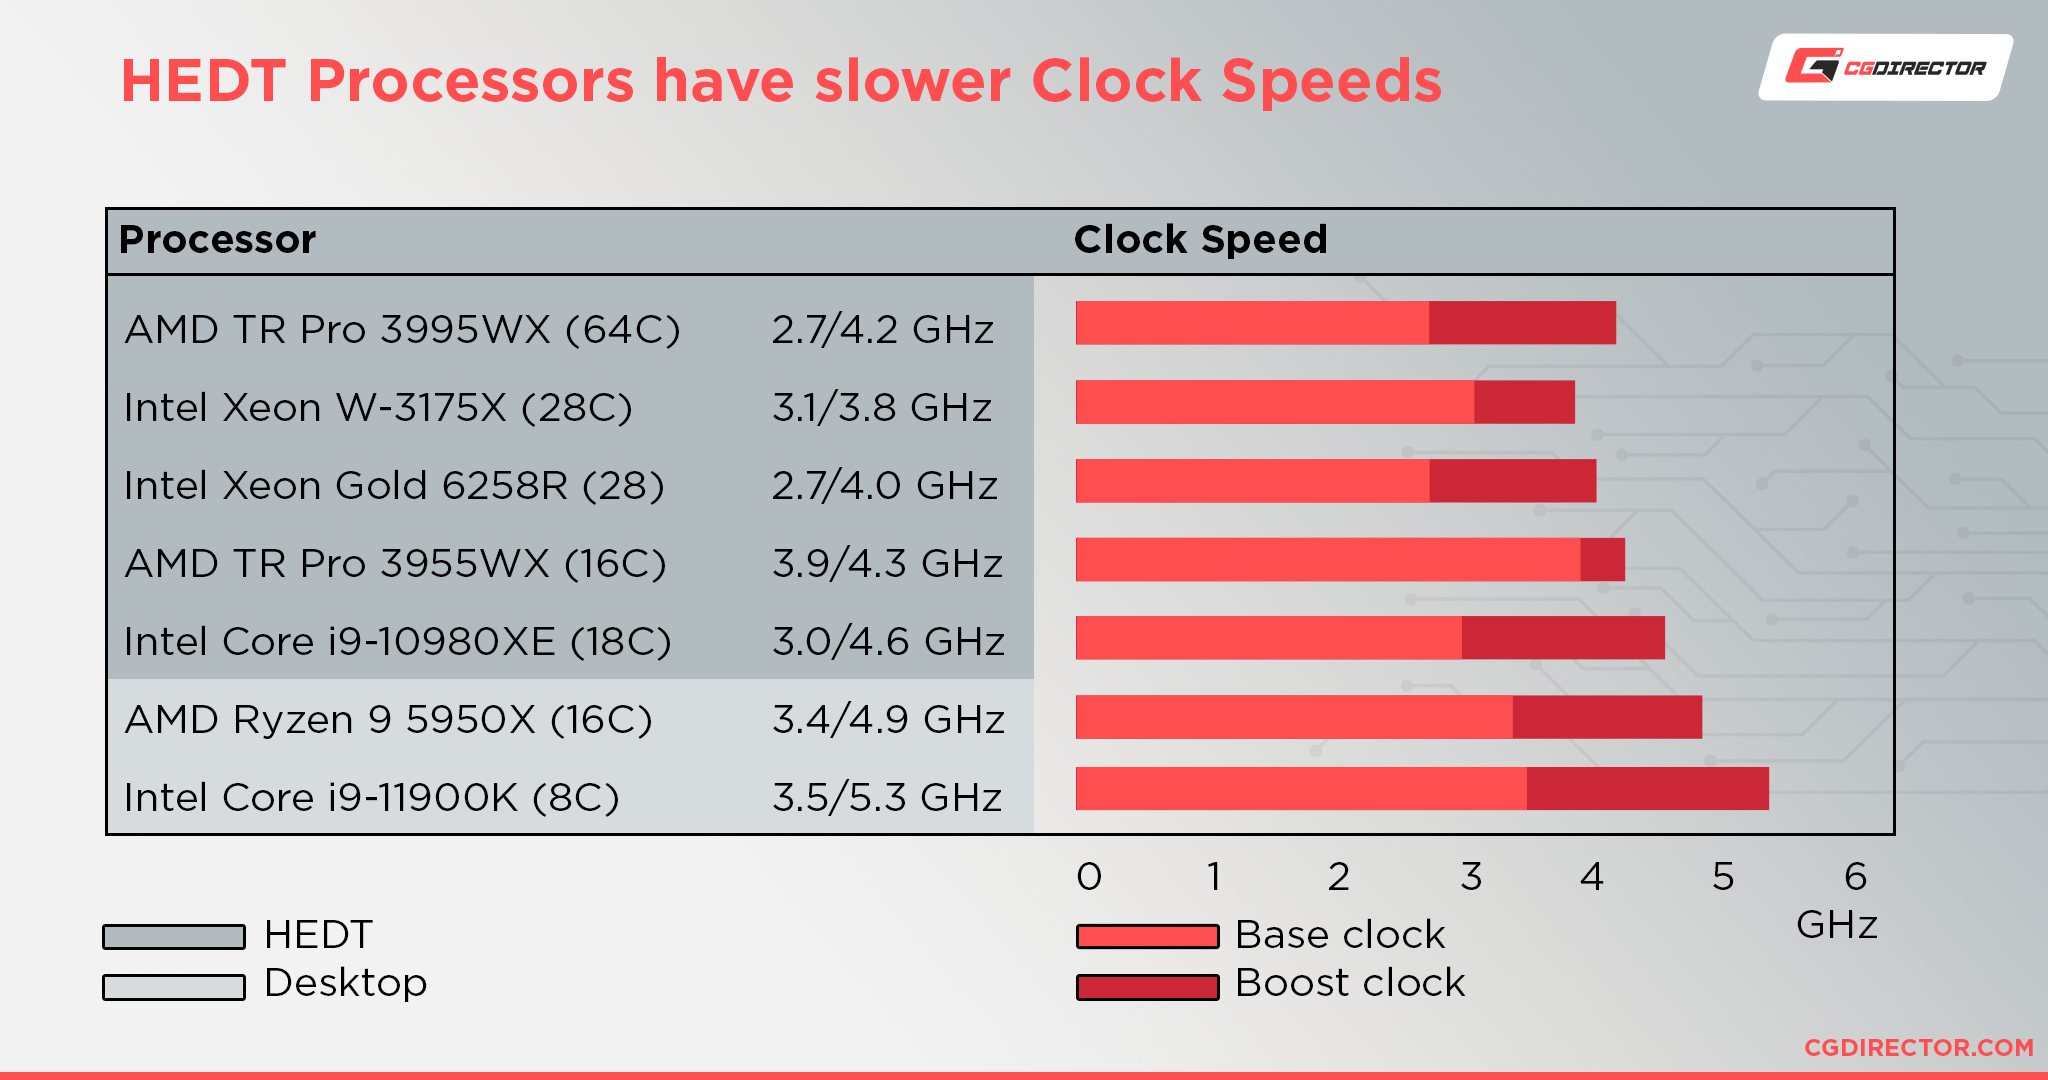 HEDT Processors have slower clockspeeds